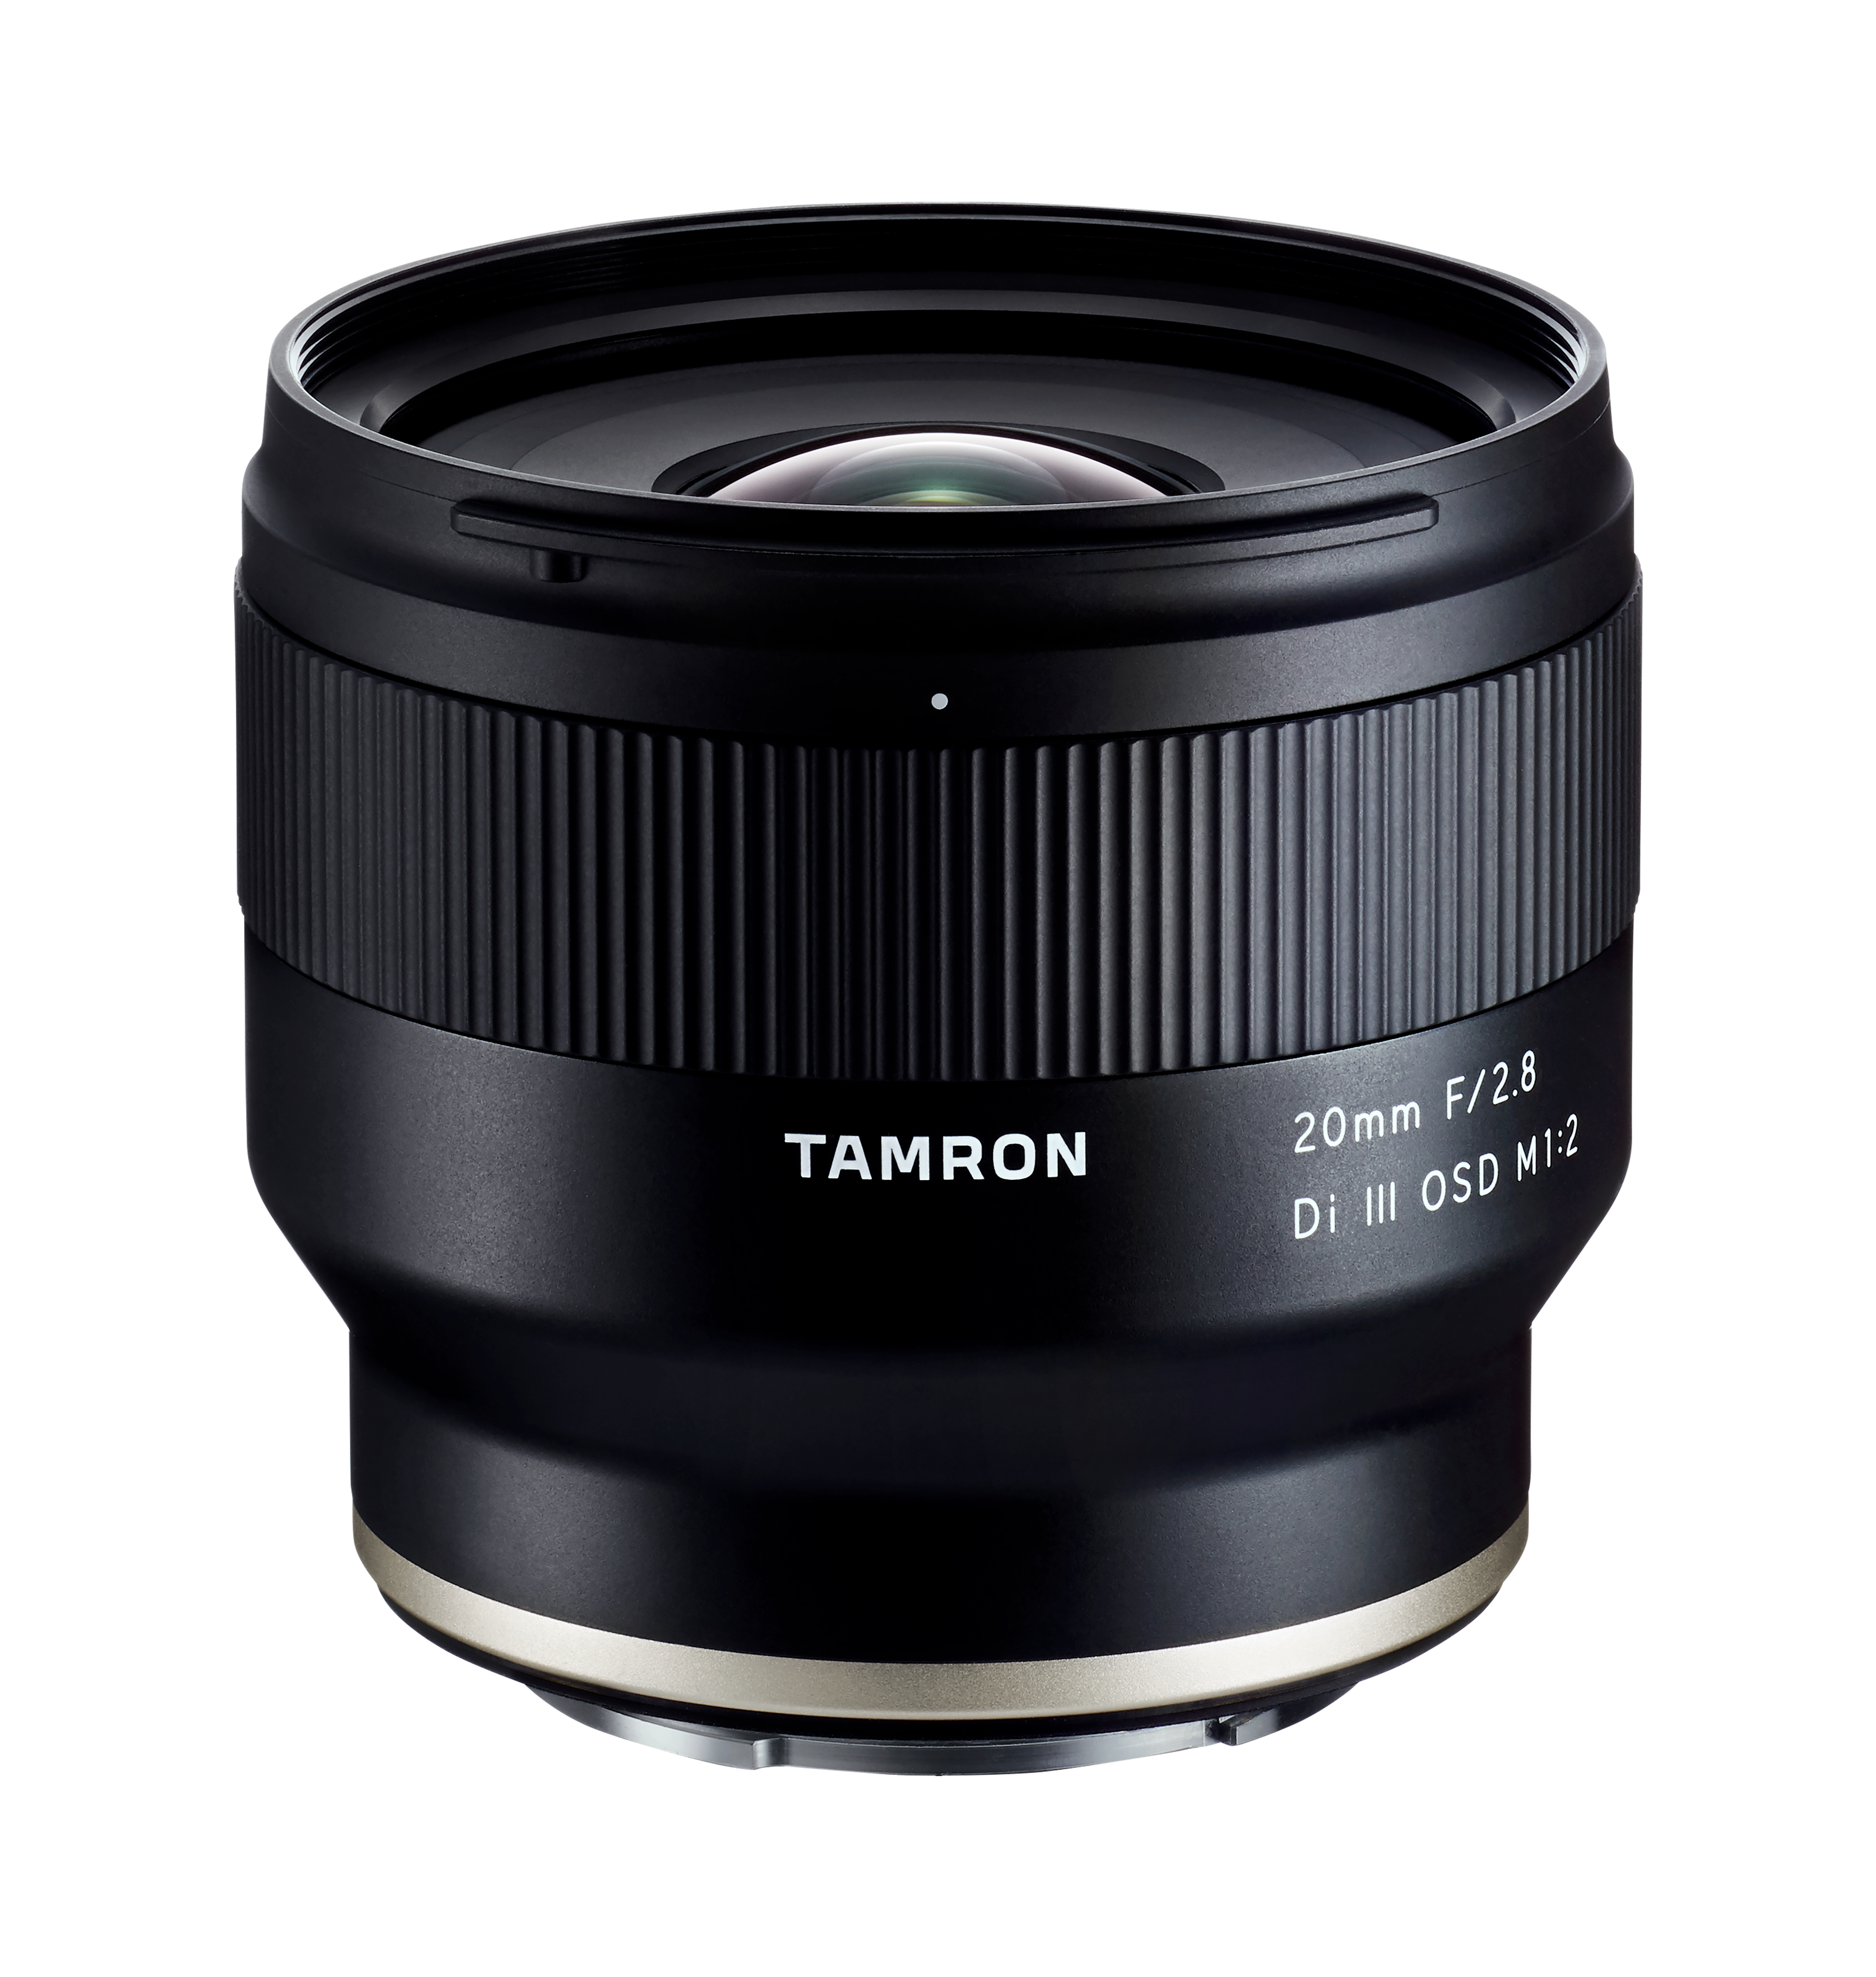 Tamron 20mm F2.8 Di III OSD M1:2 (SONY E) - Garanzia Polyphoto 5 anni - Cine Sud è da 45 anni sul mercato!